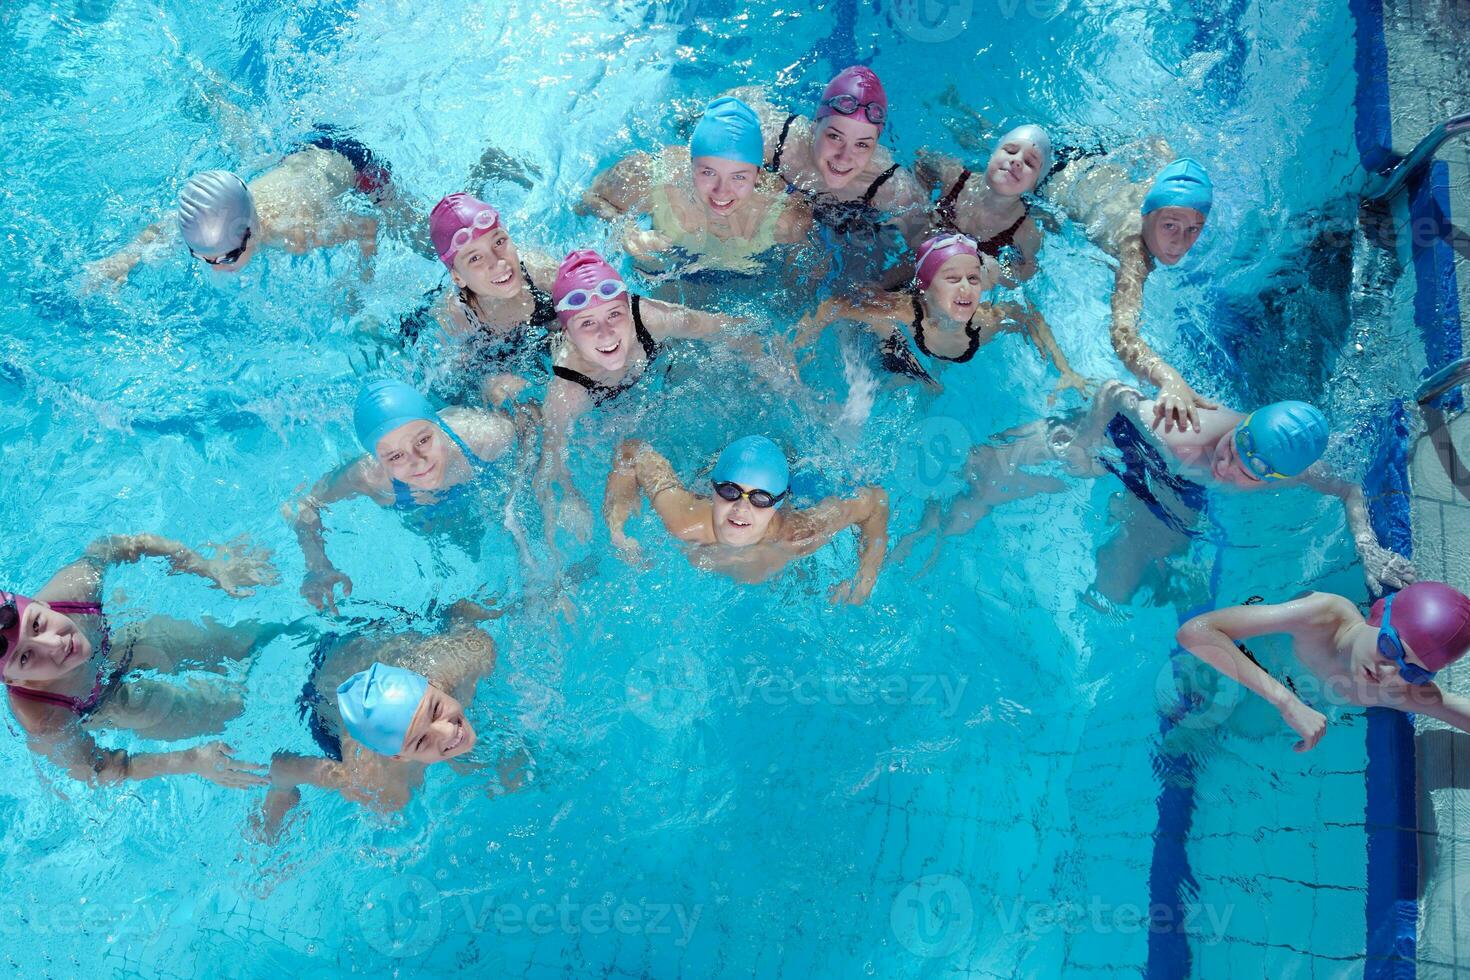 groupe d'enfants heureux à la piscine photo